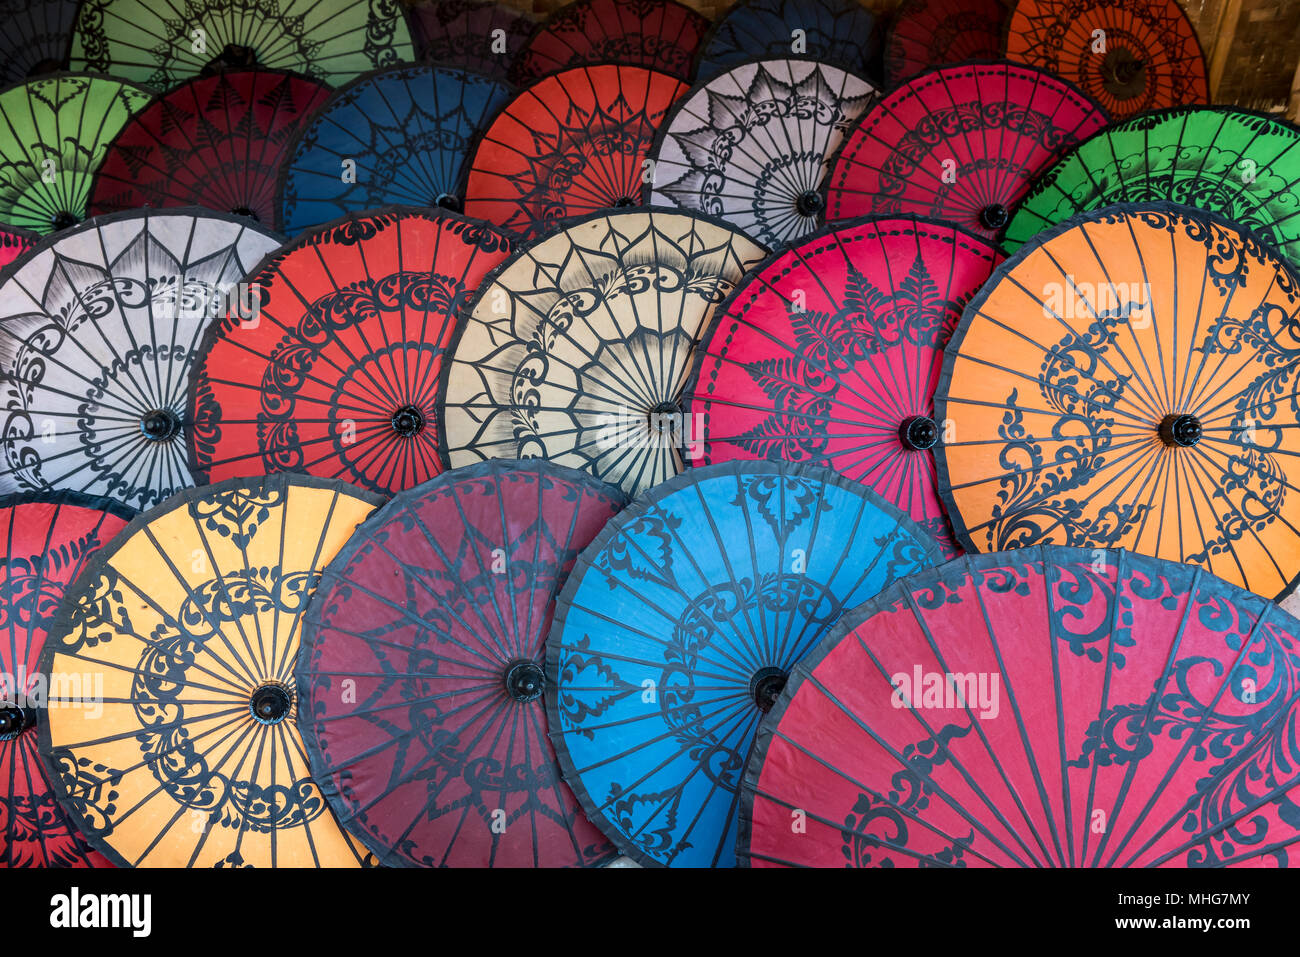 L'artisanat traditionnel de parapluies vendus comme cadeaux touristiques à Bagan, Myanmar (Birmanie) Banque D'Images